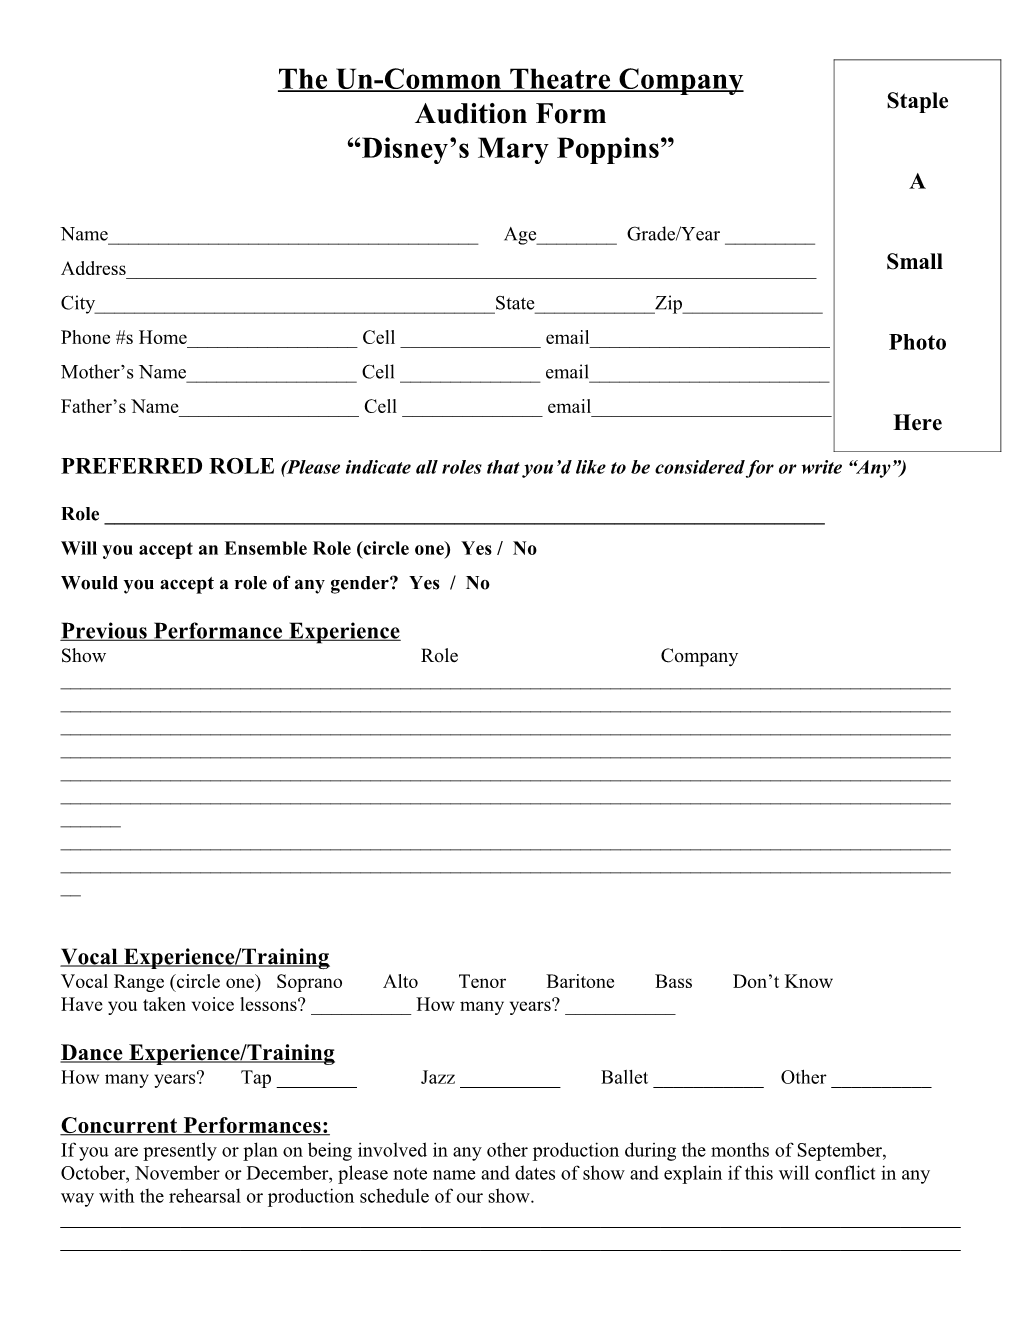 Un-Common Theatre Company Audition Form